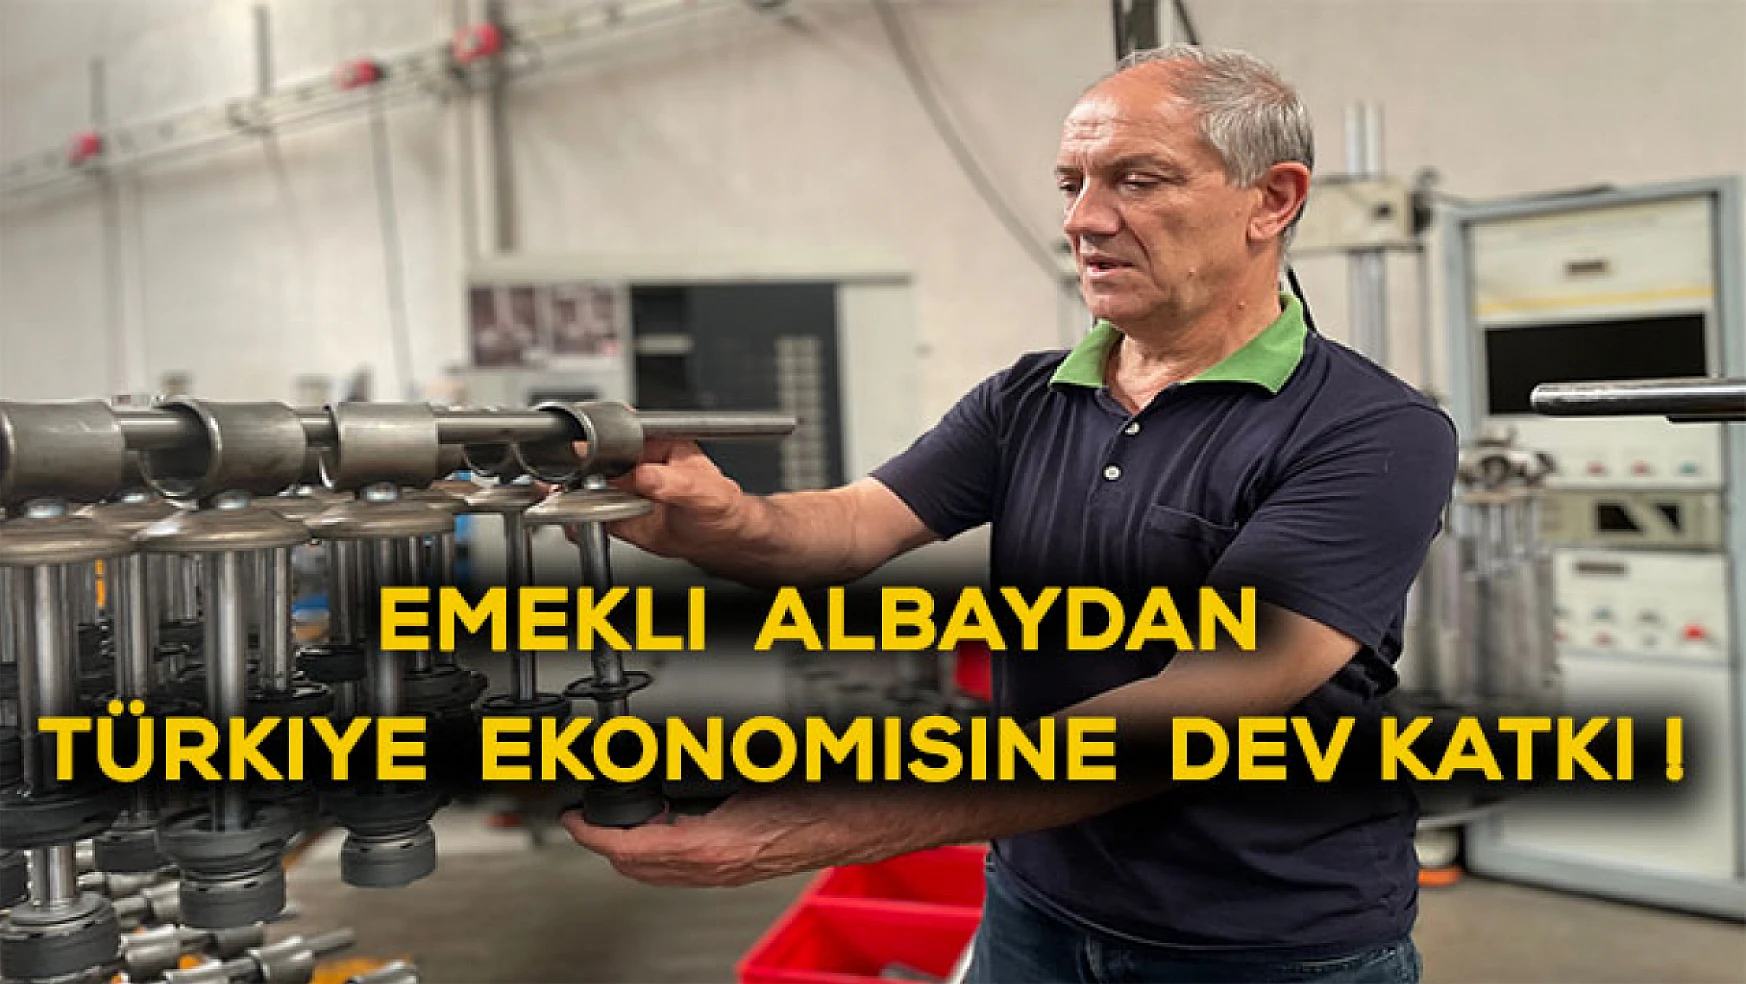 Emekli albaydan, Türkiye ekonomisine dev katkı!